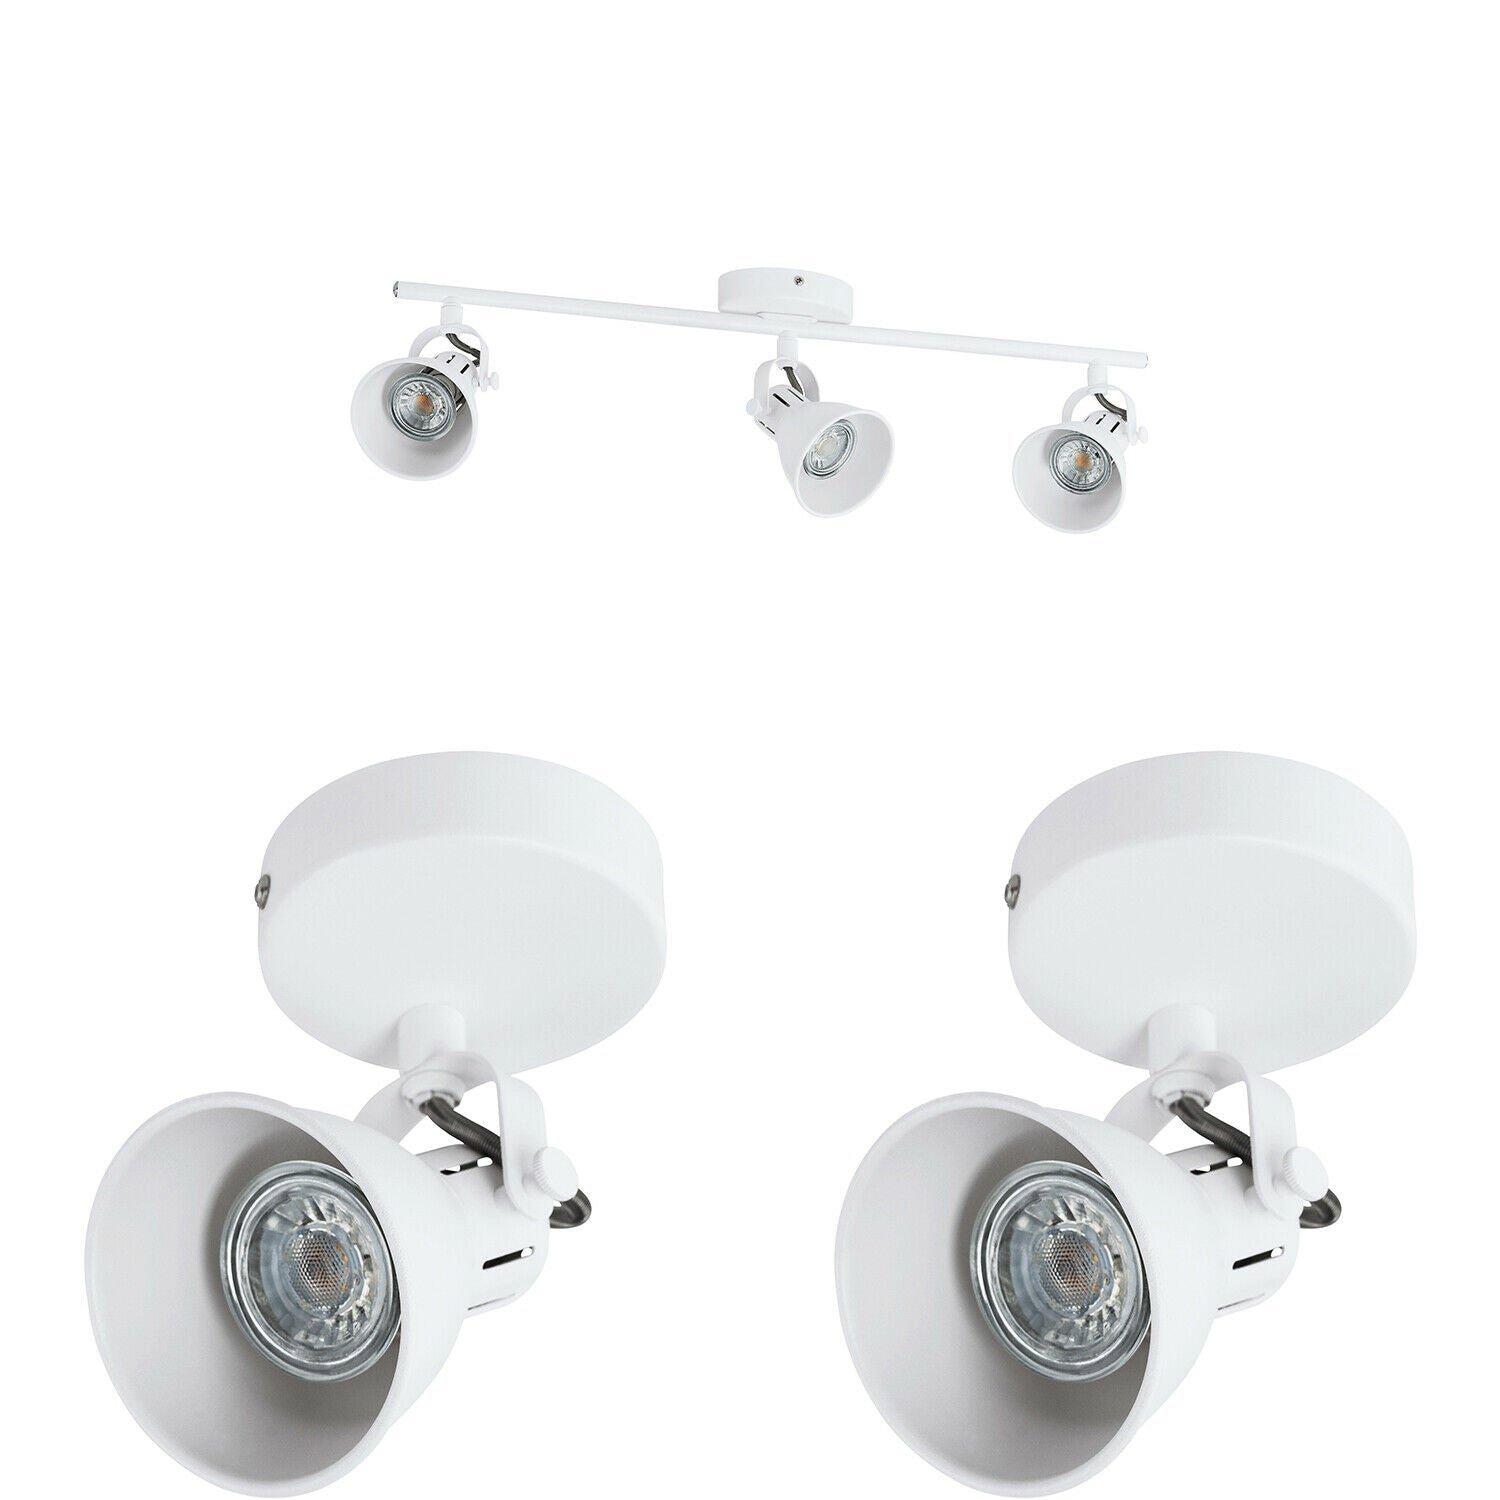 Ceiling Spot Light & 2x Matching Wall Lights Matt White Adjustable Kitchen Lamp